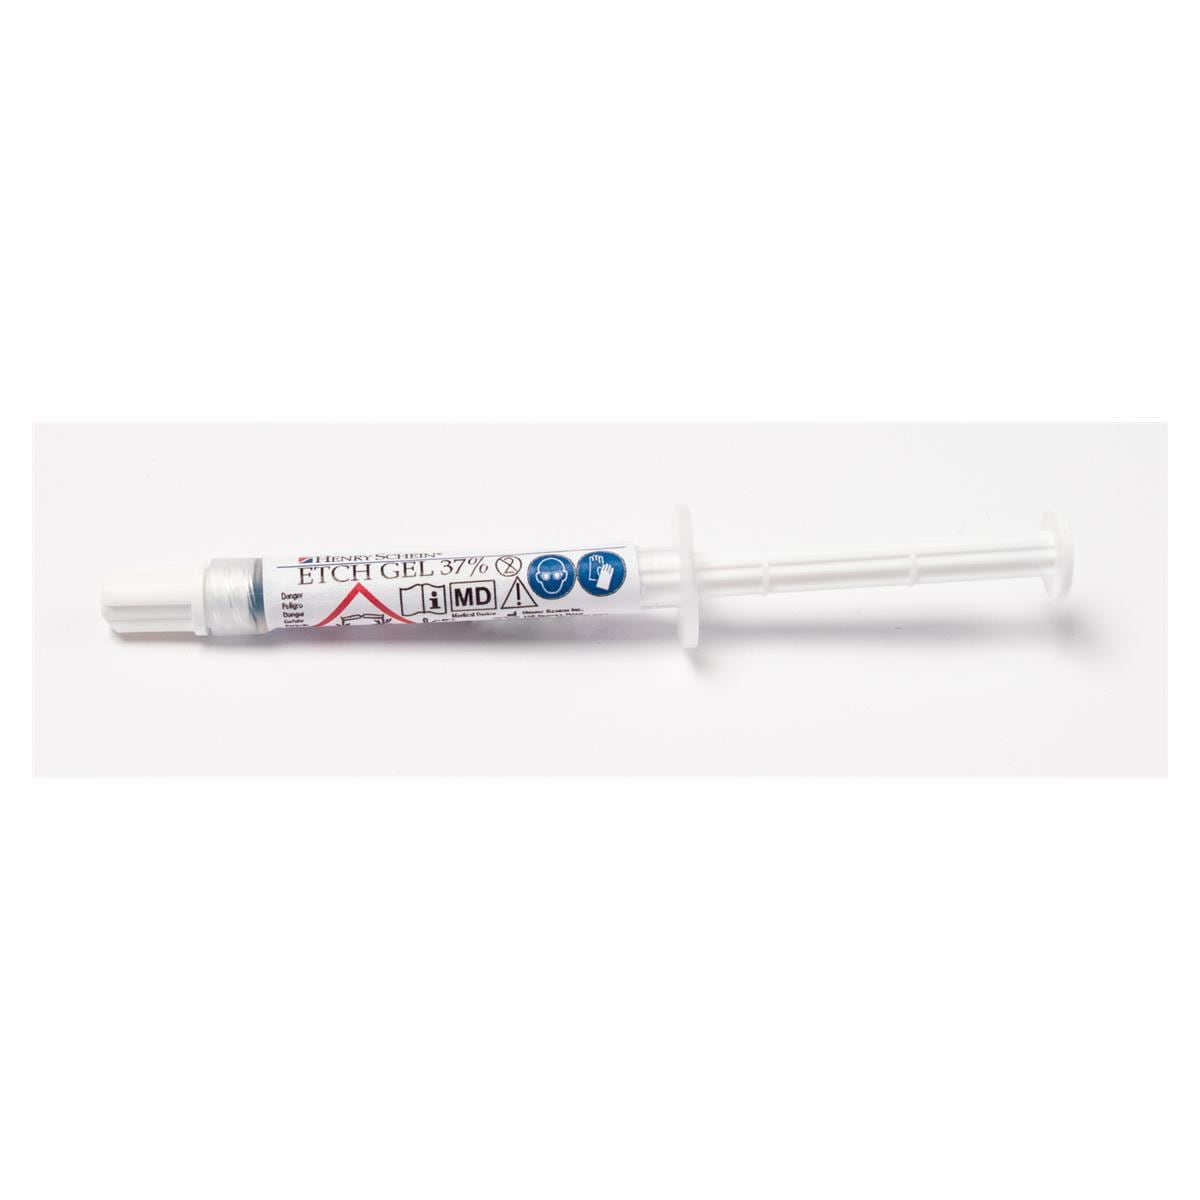 Etch Gel 37% Syringe Kit - 12x 1,2 g en 50 tips